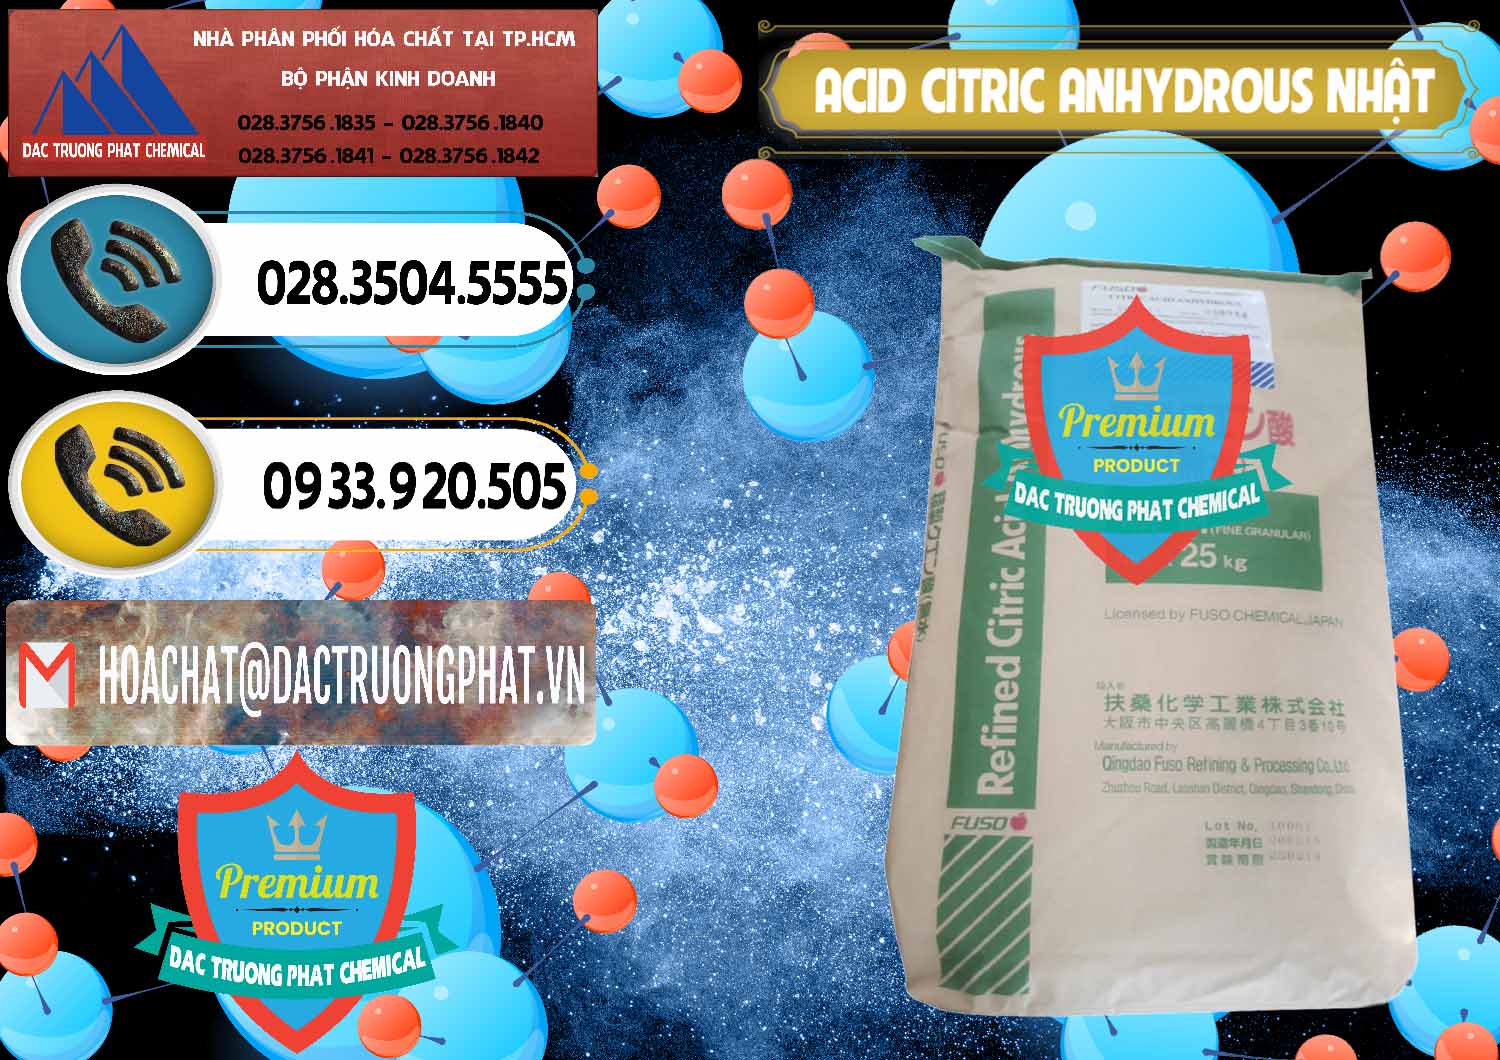 Cty phân phối và bán Acid Citric - Axit Citric Anhydrous FUSO Nhật Japan - 0439 - Chuyên bán - cung cấp hóa chất tại TP.HCM - hoachatdetnhuom.vn